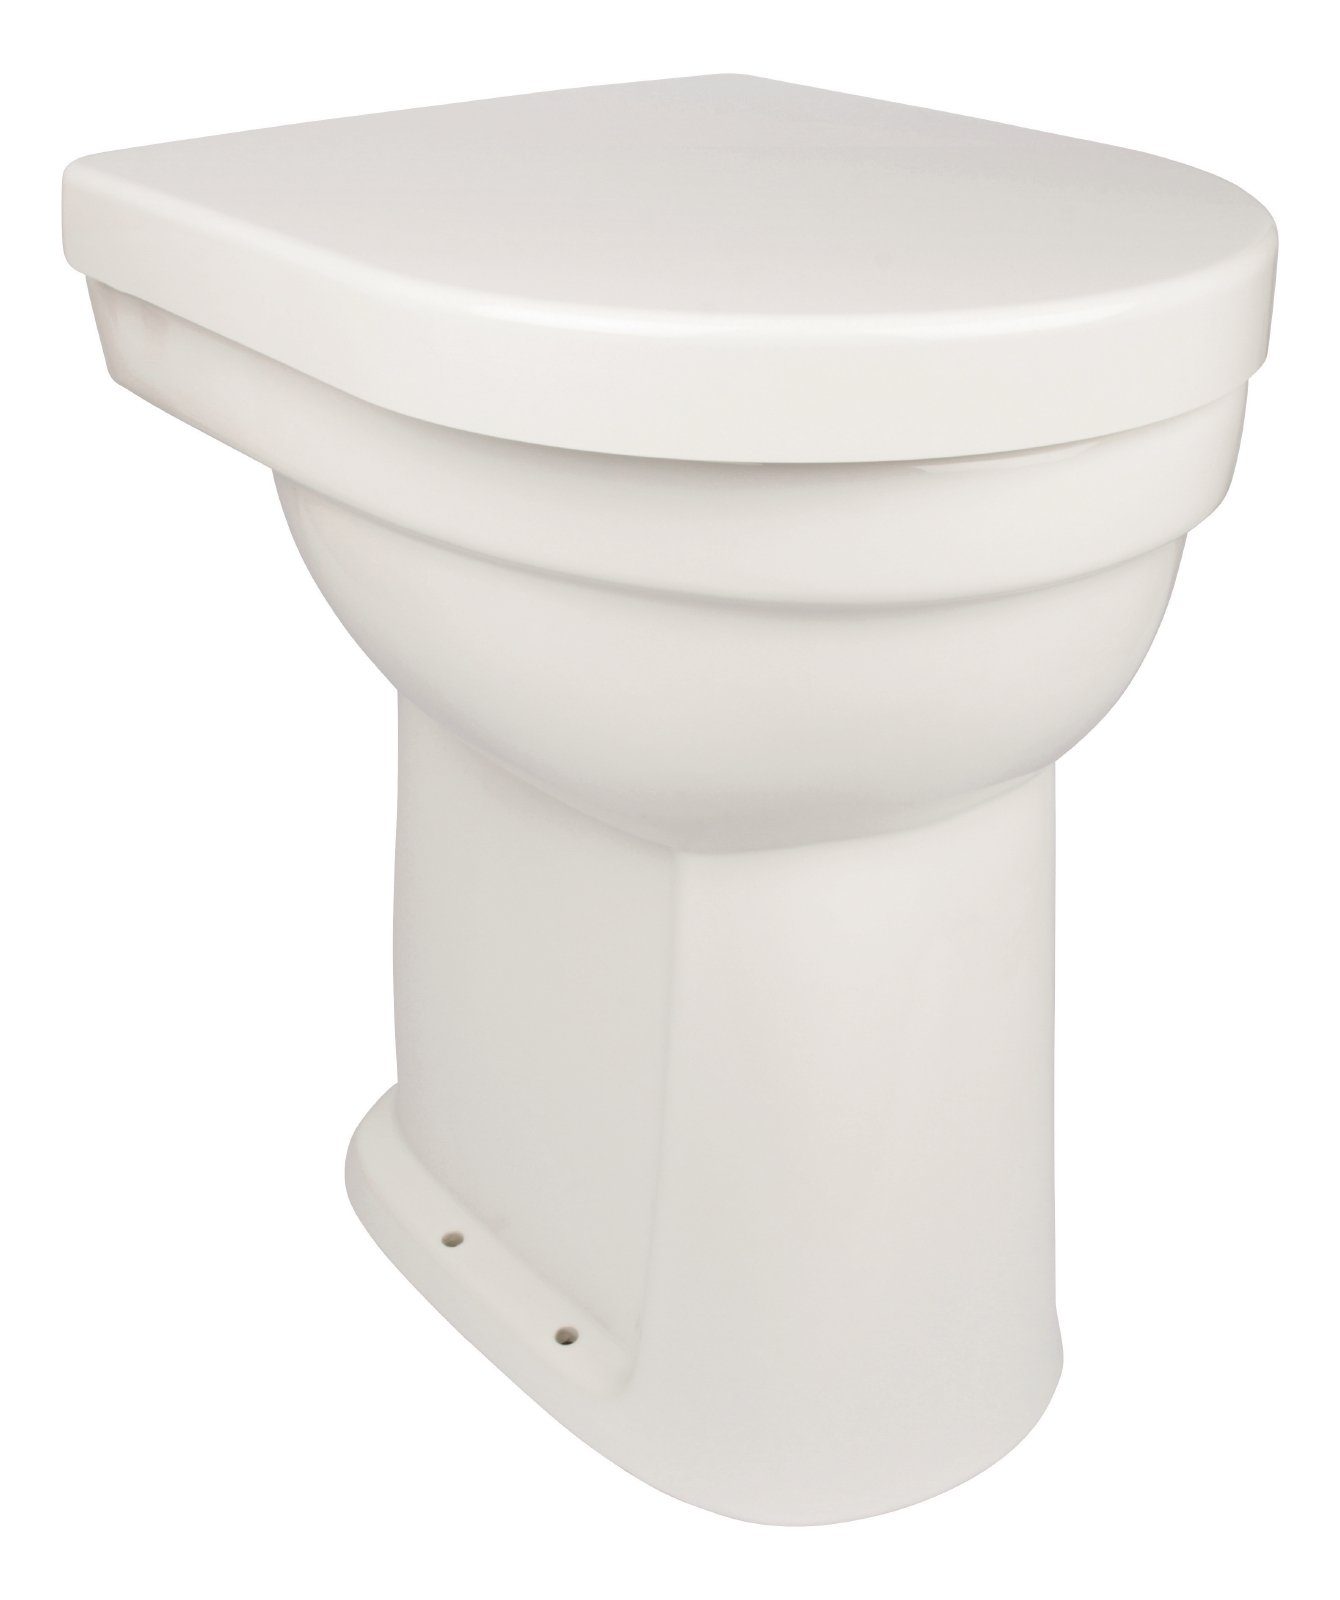 Calmwaters Flachspül-WC, Bodenstehend, Abgang Senkrecht, Stand-WC, Weiß,  Flachspüler, 10 cm erhöht, WC-Sitz mit Absenkautomatik online kaufen | OTTO